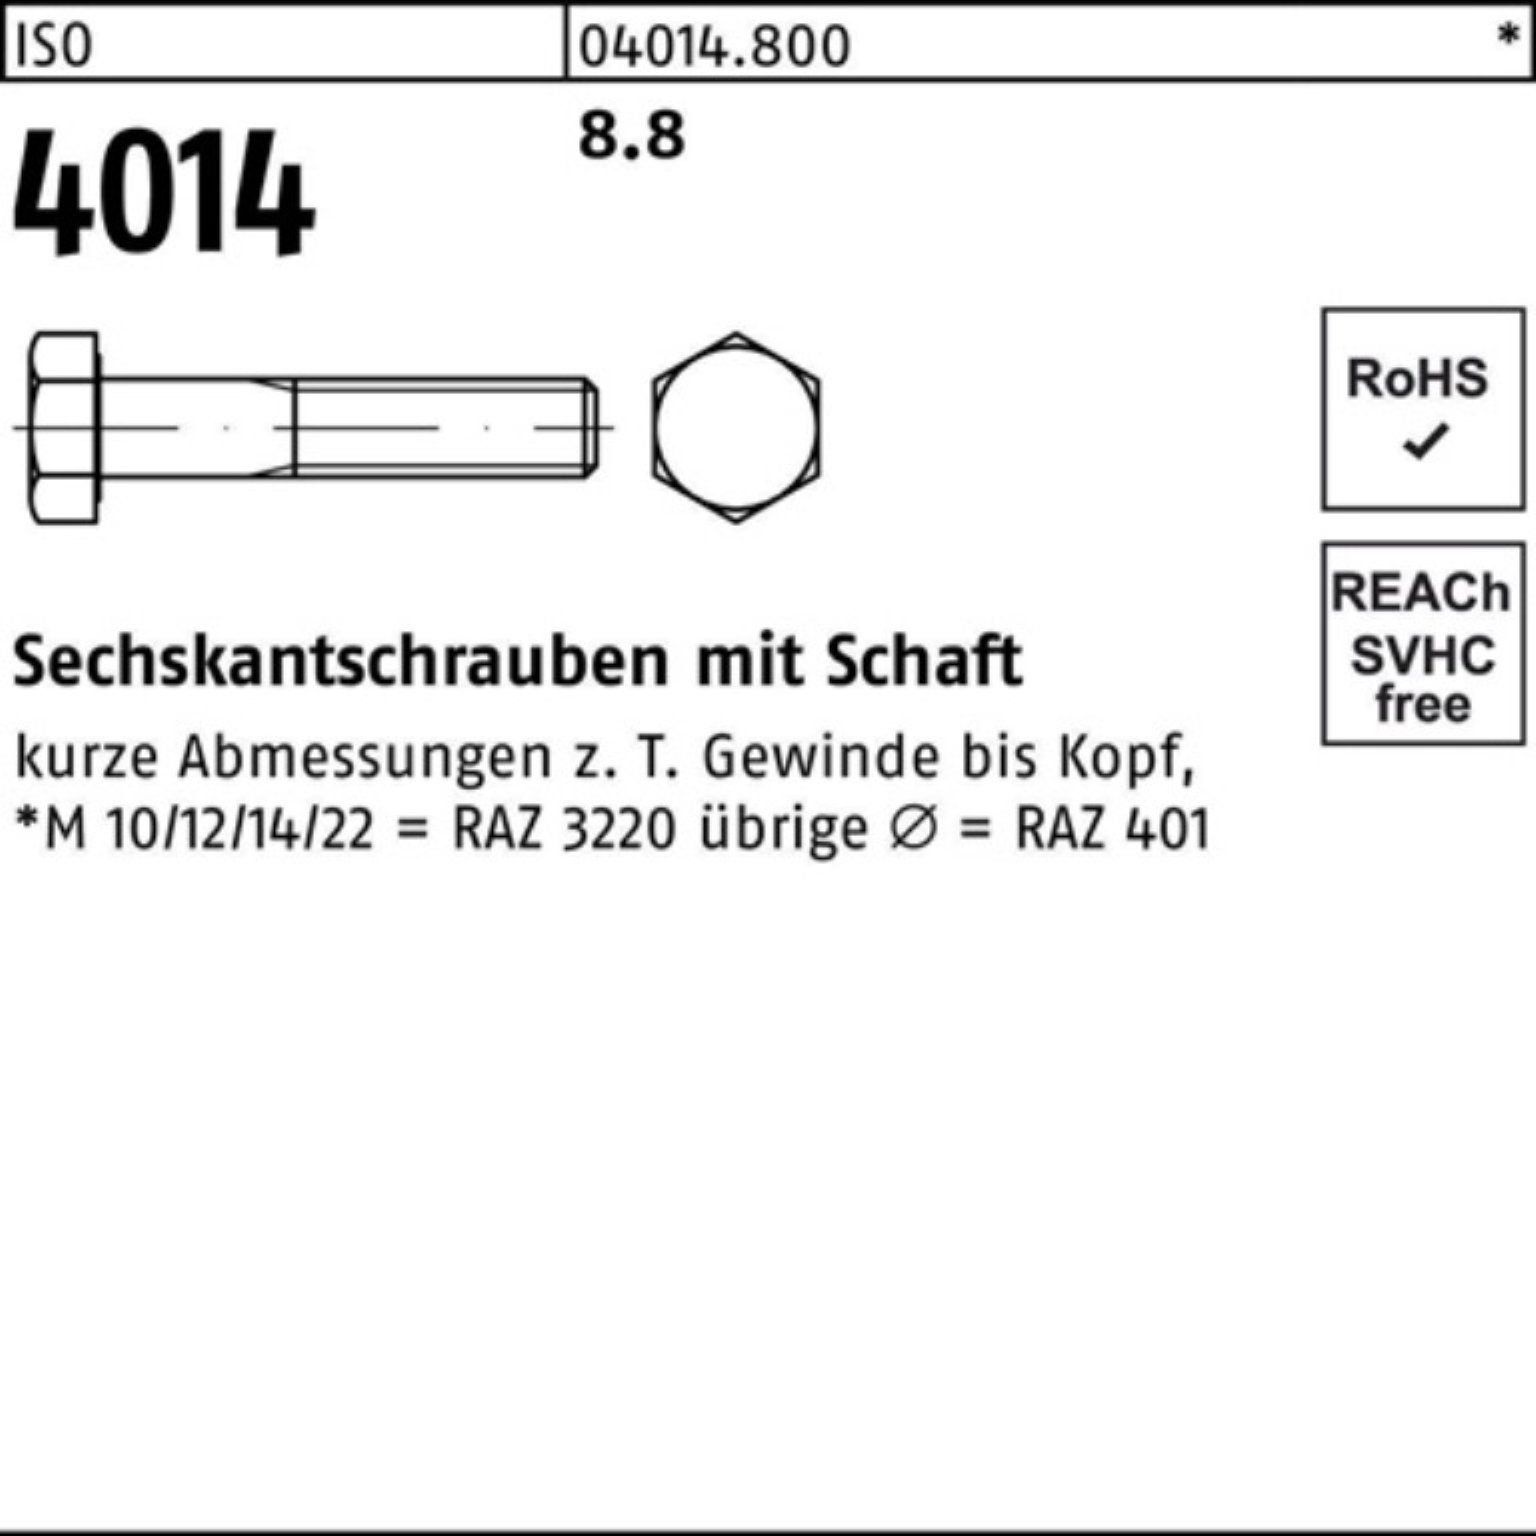 Bufab Sechskantschraube 100er Pack Schaft M10x 4014 8.8 50 ISO Sechskantschraube 260 Stück IS